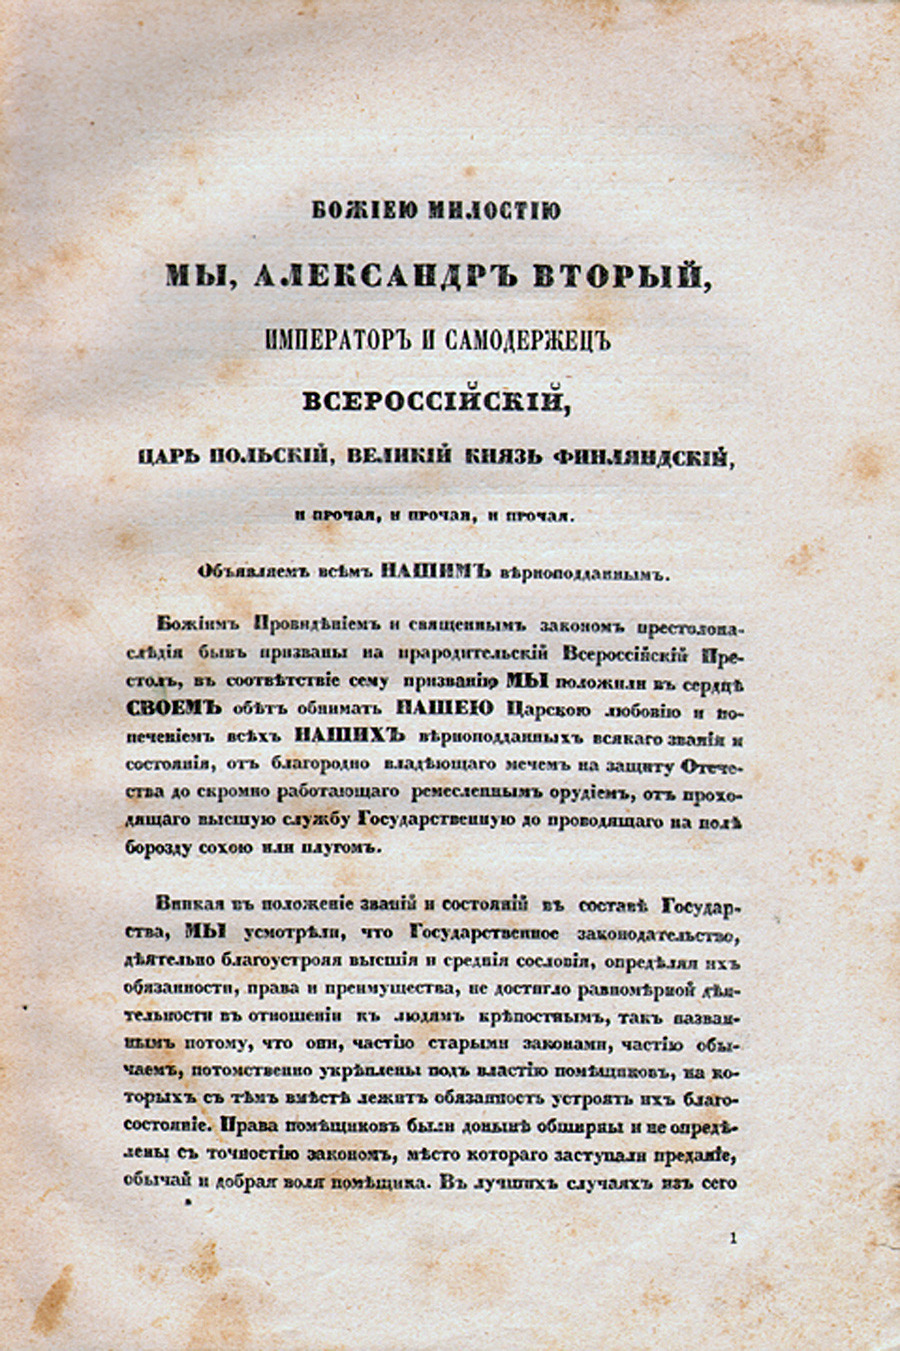 Primeira página do Manifesto de 19 de fevereiro de 1861.